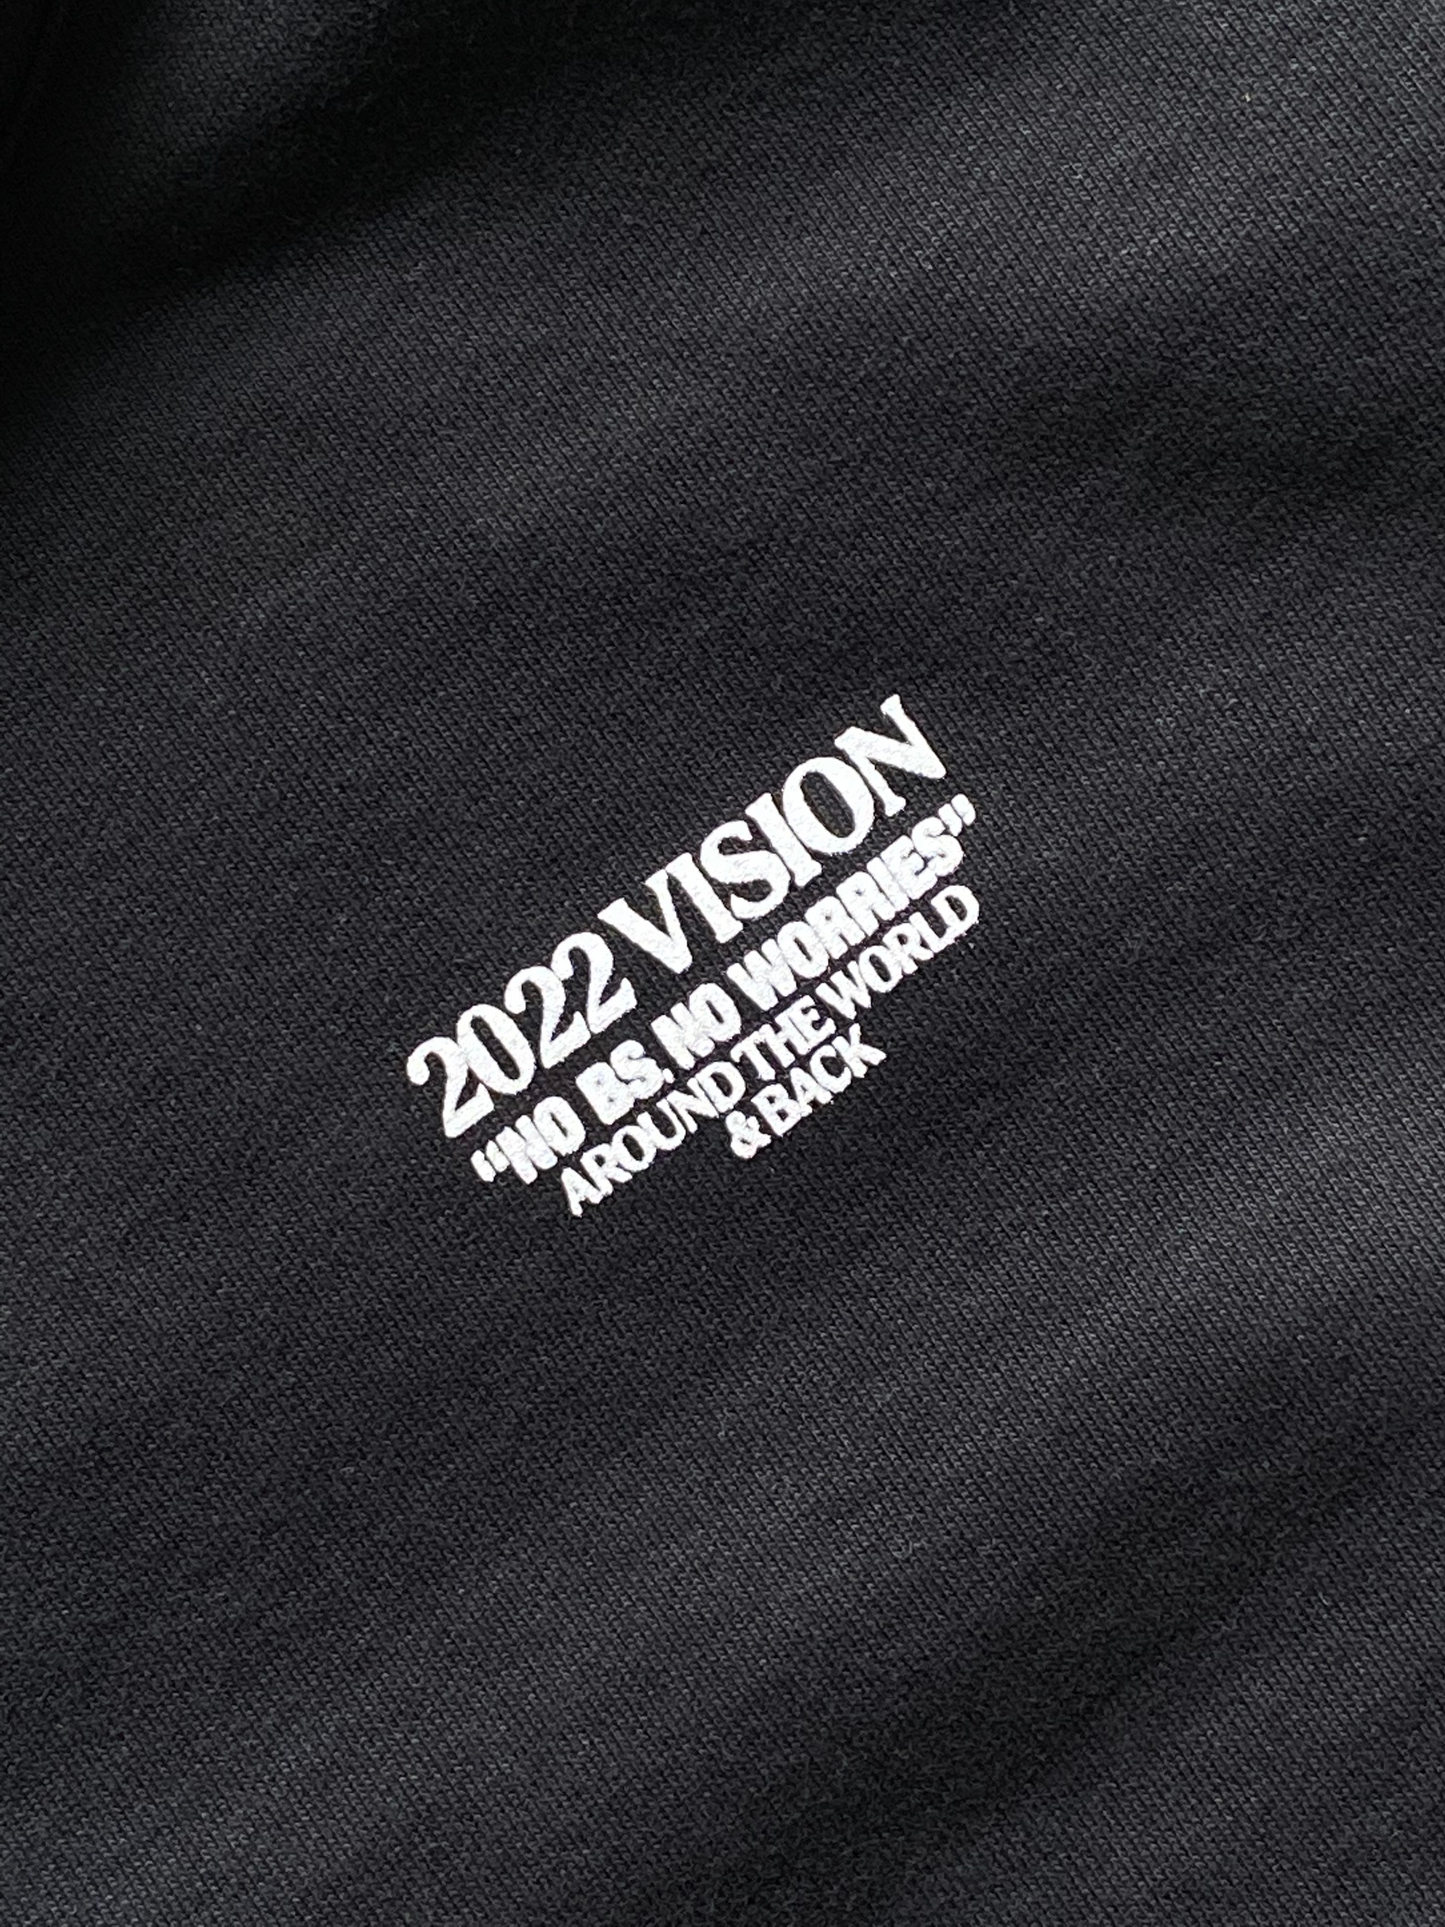 2022 Vision Hoodie